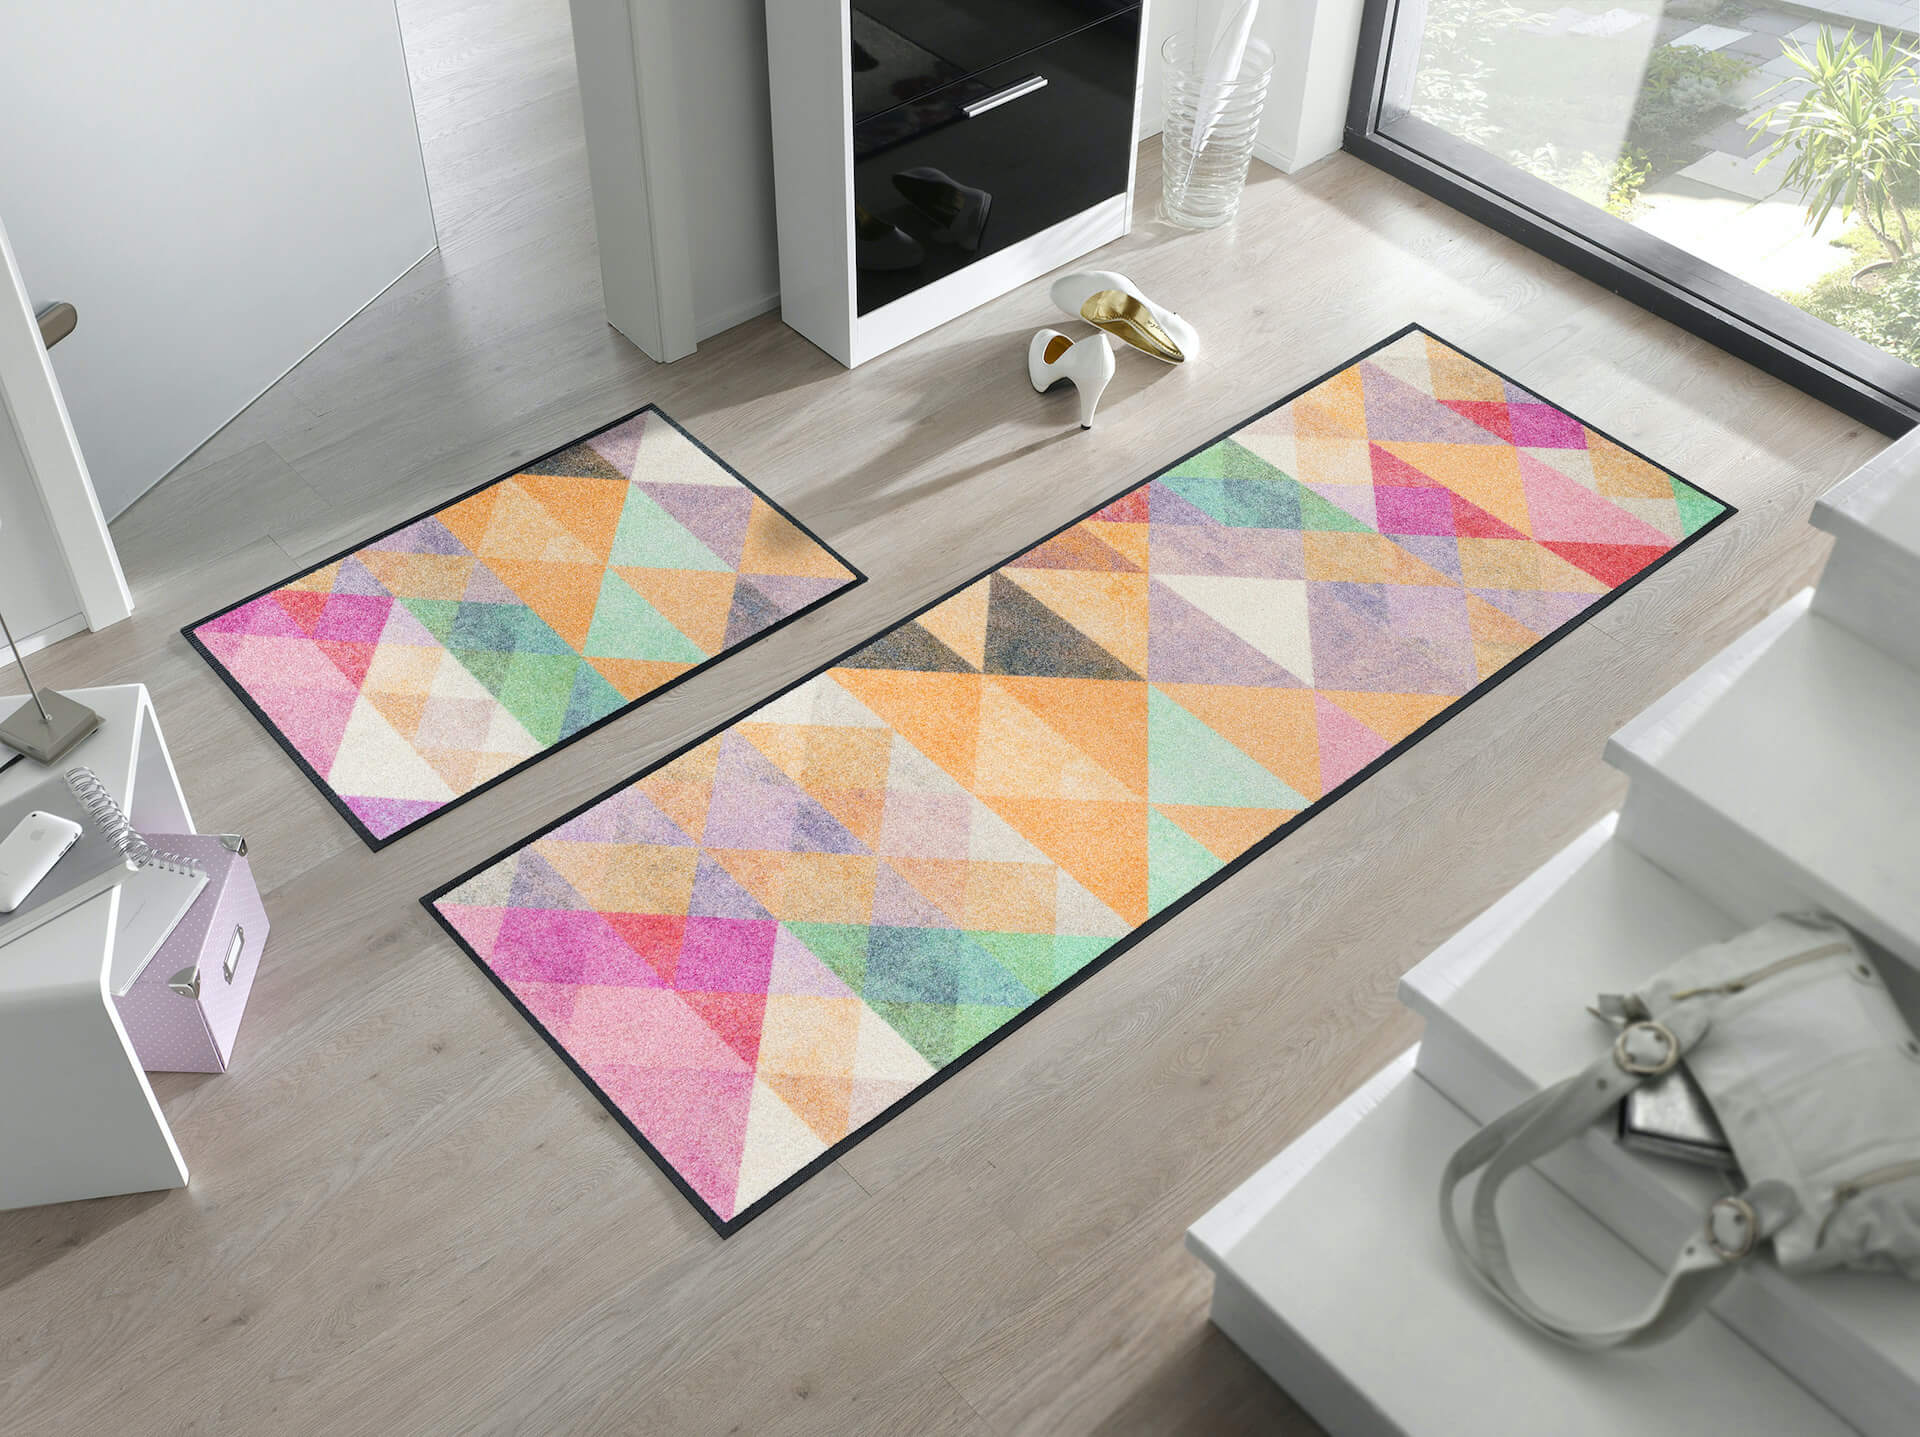 Sauberlaufmatte Snorre, Wash & Dry Designmatte, mehrfarbig, 050 x 075 + 075 x 190 cm, Interieurbild